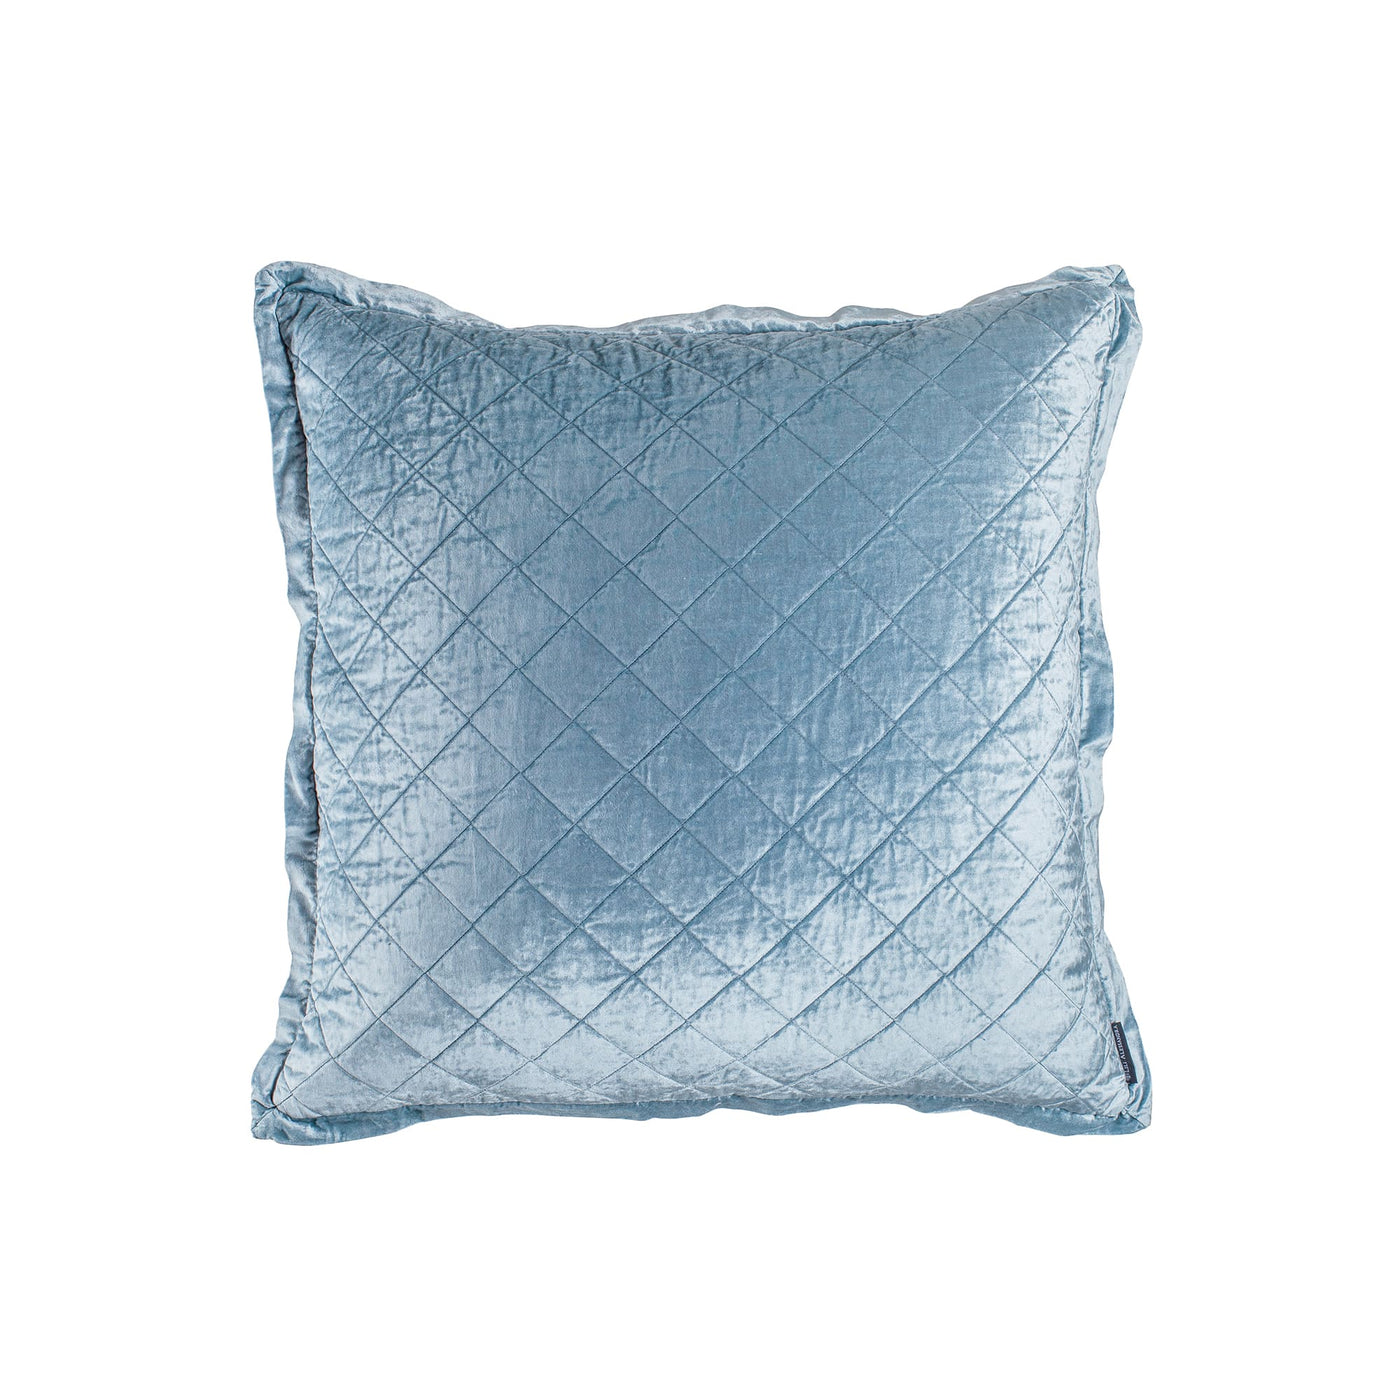 Chloe Euro Pillow Sham Ice Blue Velvet 26X26 (No Insert)